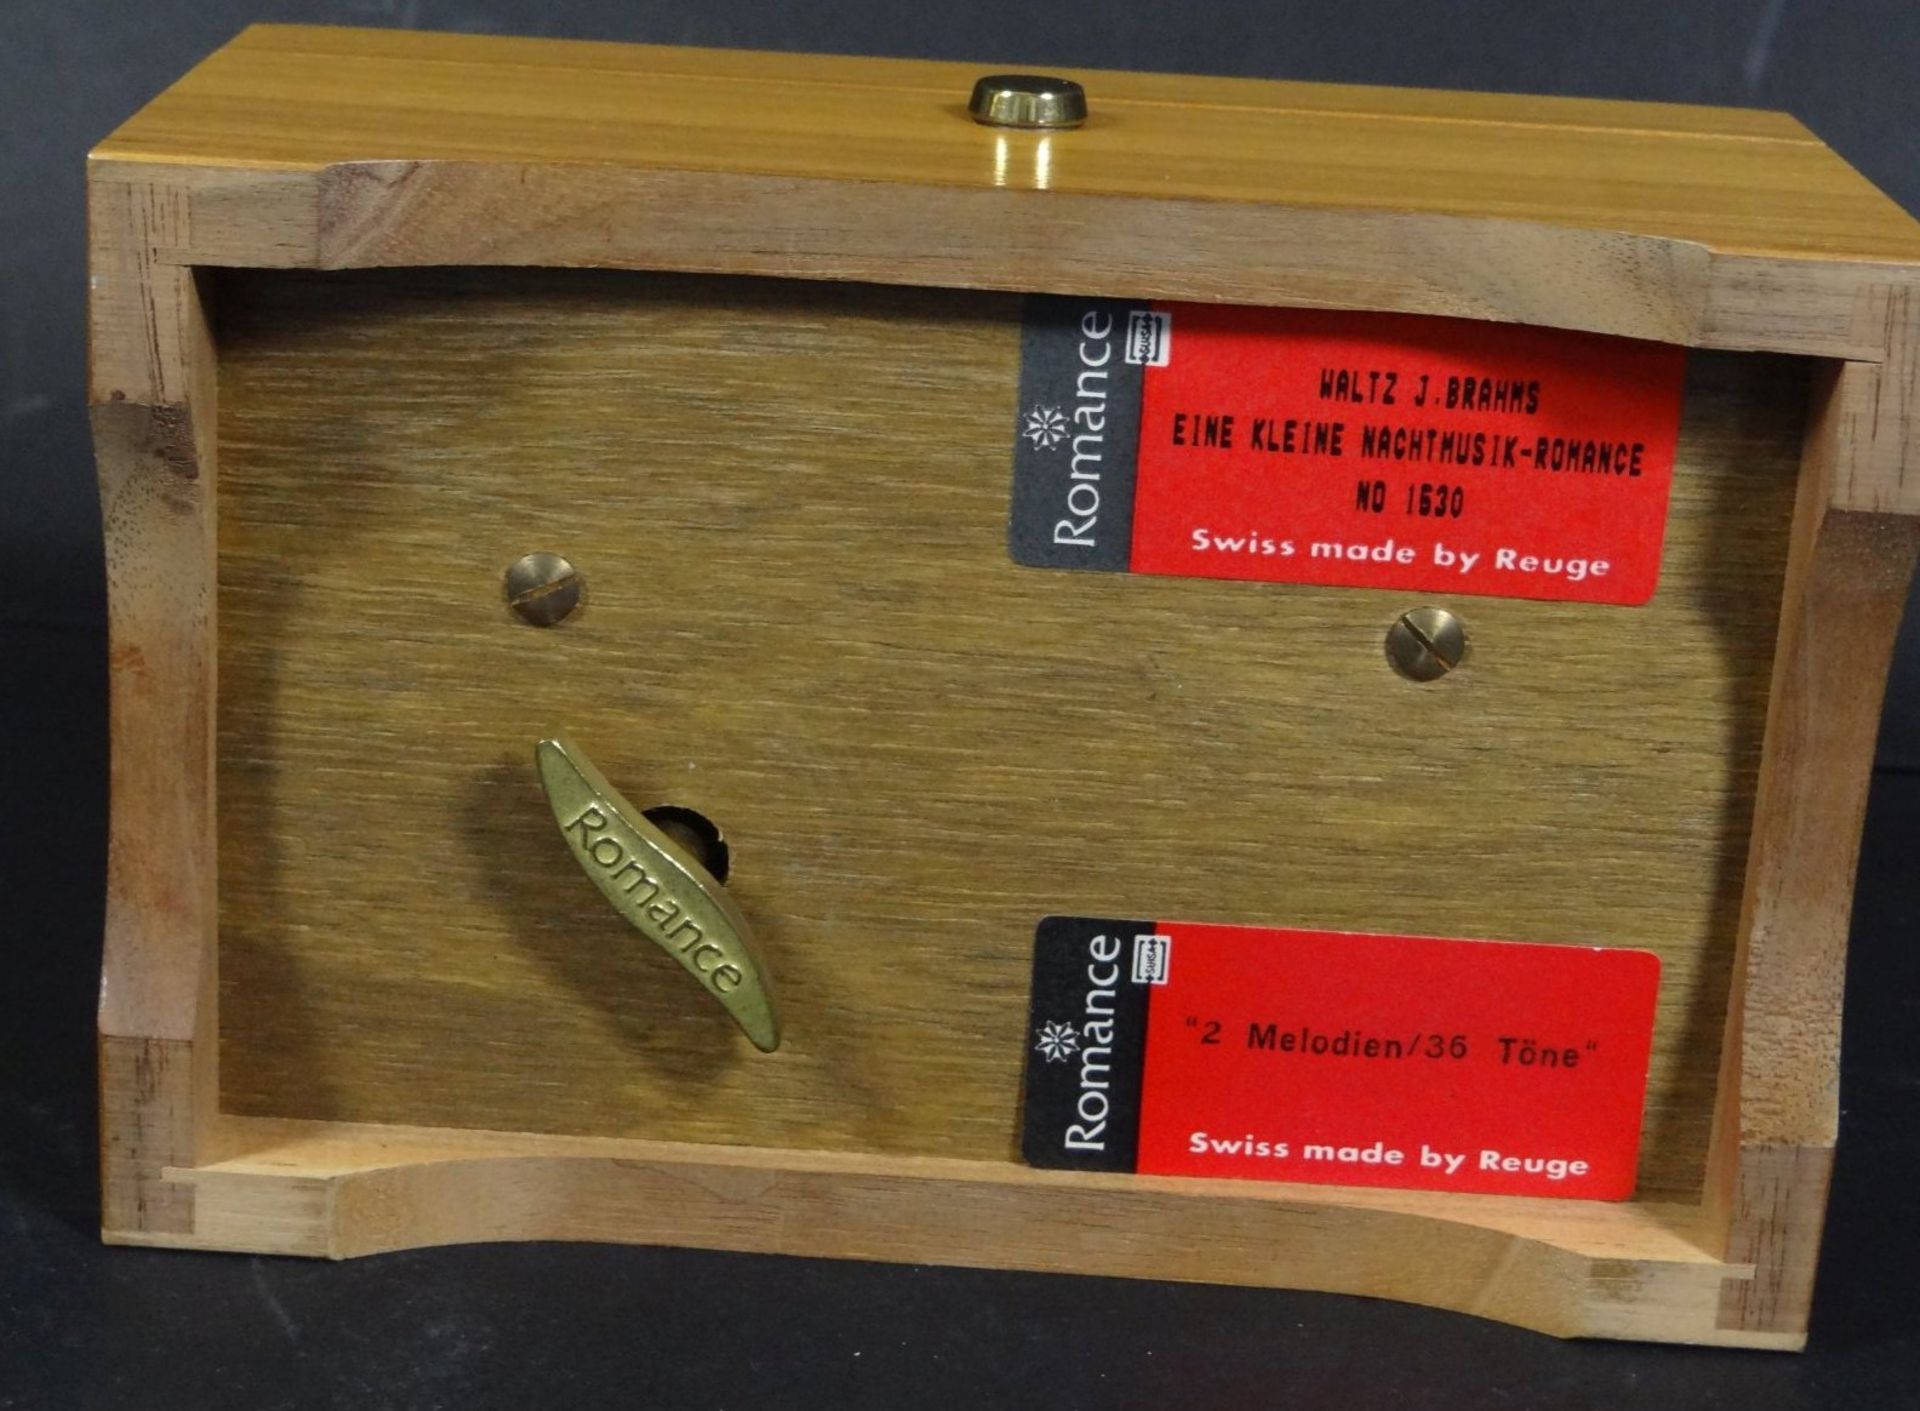 kl. Holz-Kasten mit Reuge Spieluhr, 2 Melodien, läuft, H-6,5 cm, 9x14 cm, - Bild 3 aus 7